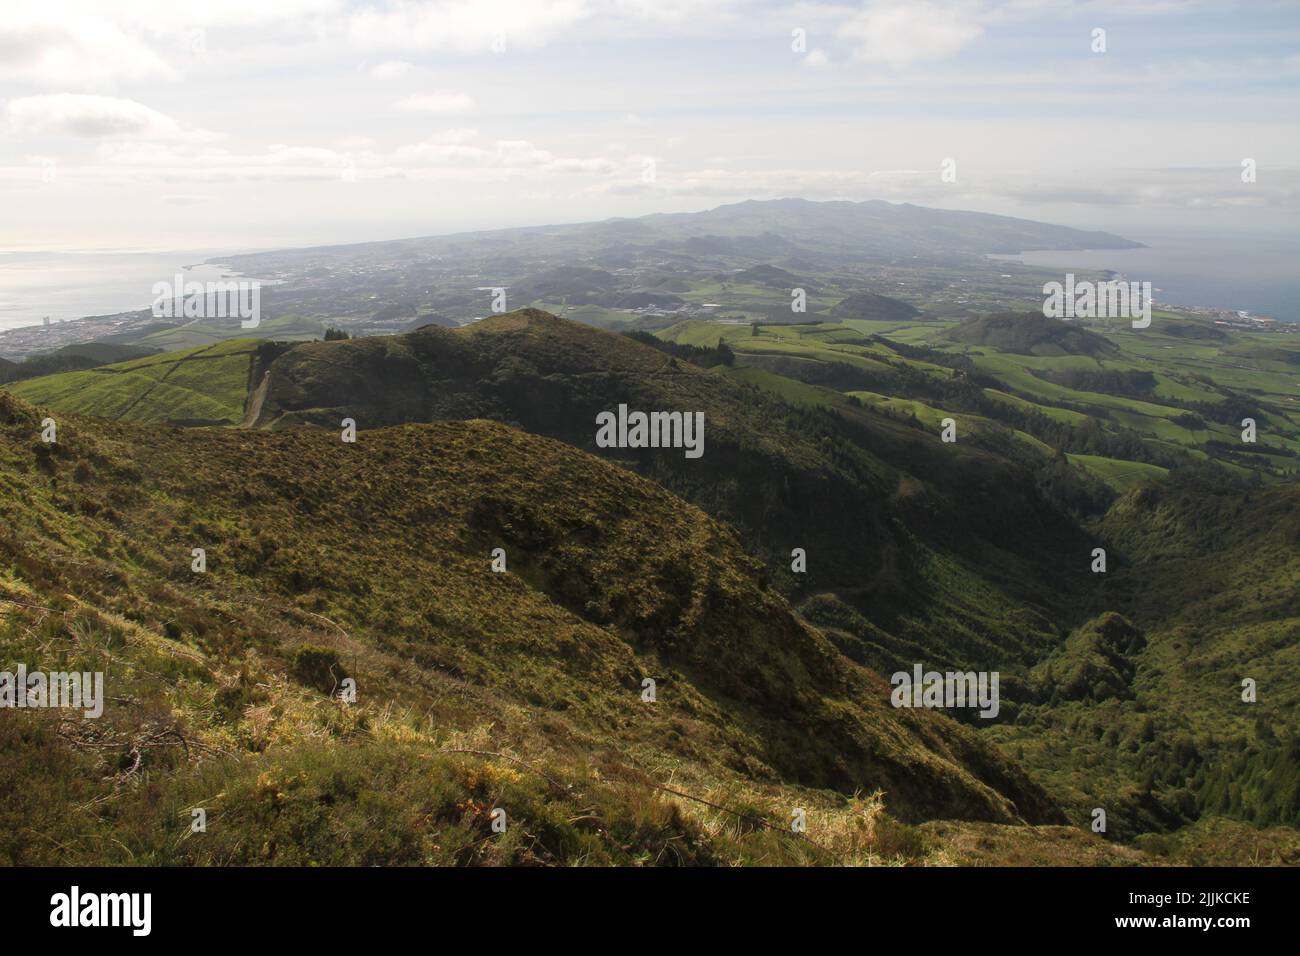 Eine Luftaufnahme von Hügeln, die an einem bewölkten Tag mit viel Grün bedeckt sind, gegen die Meereslandschaft Stockfoto